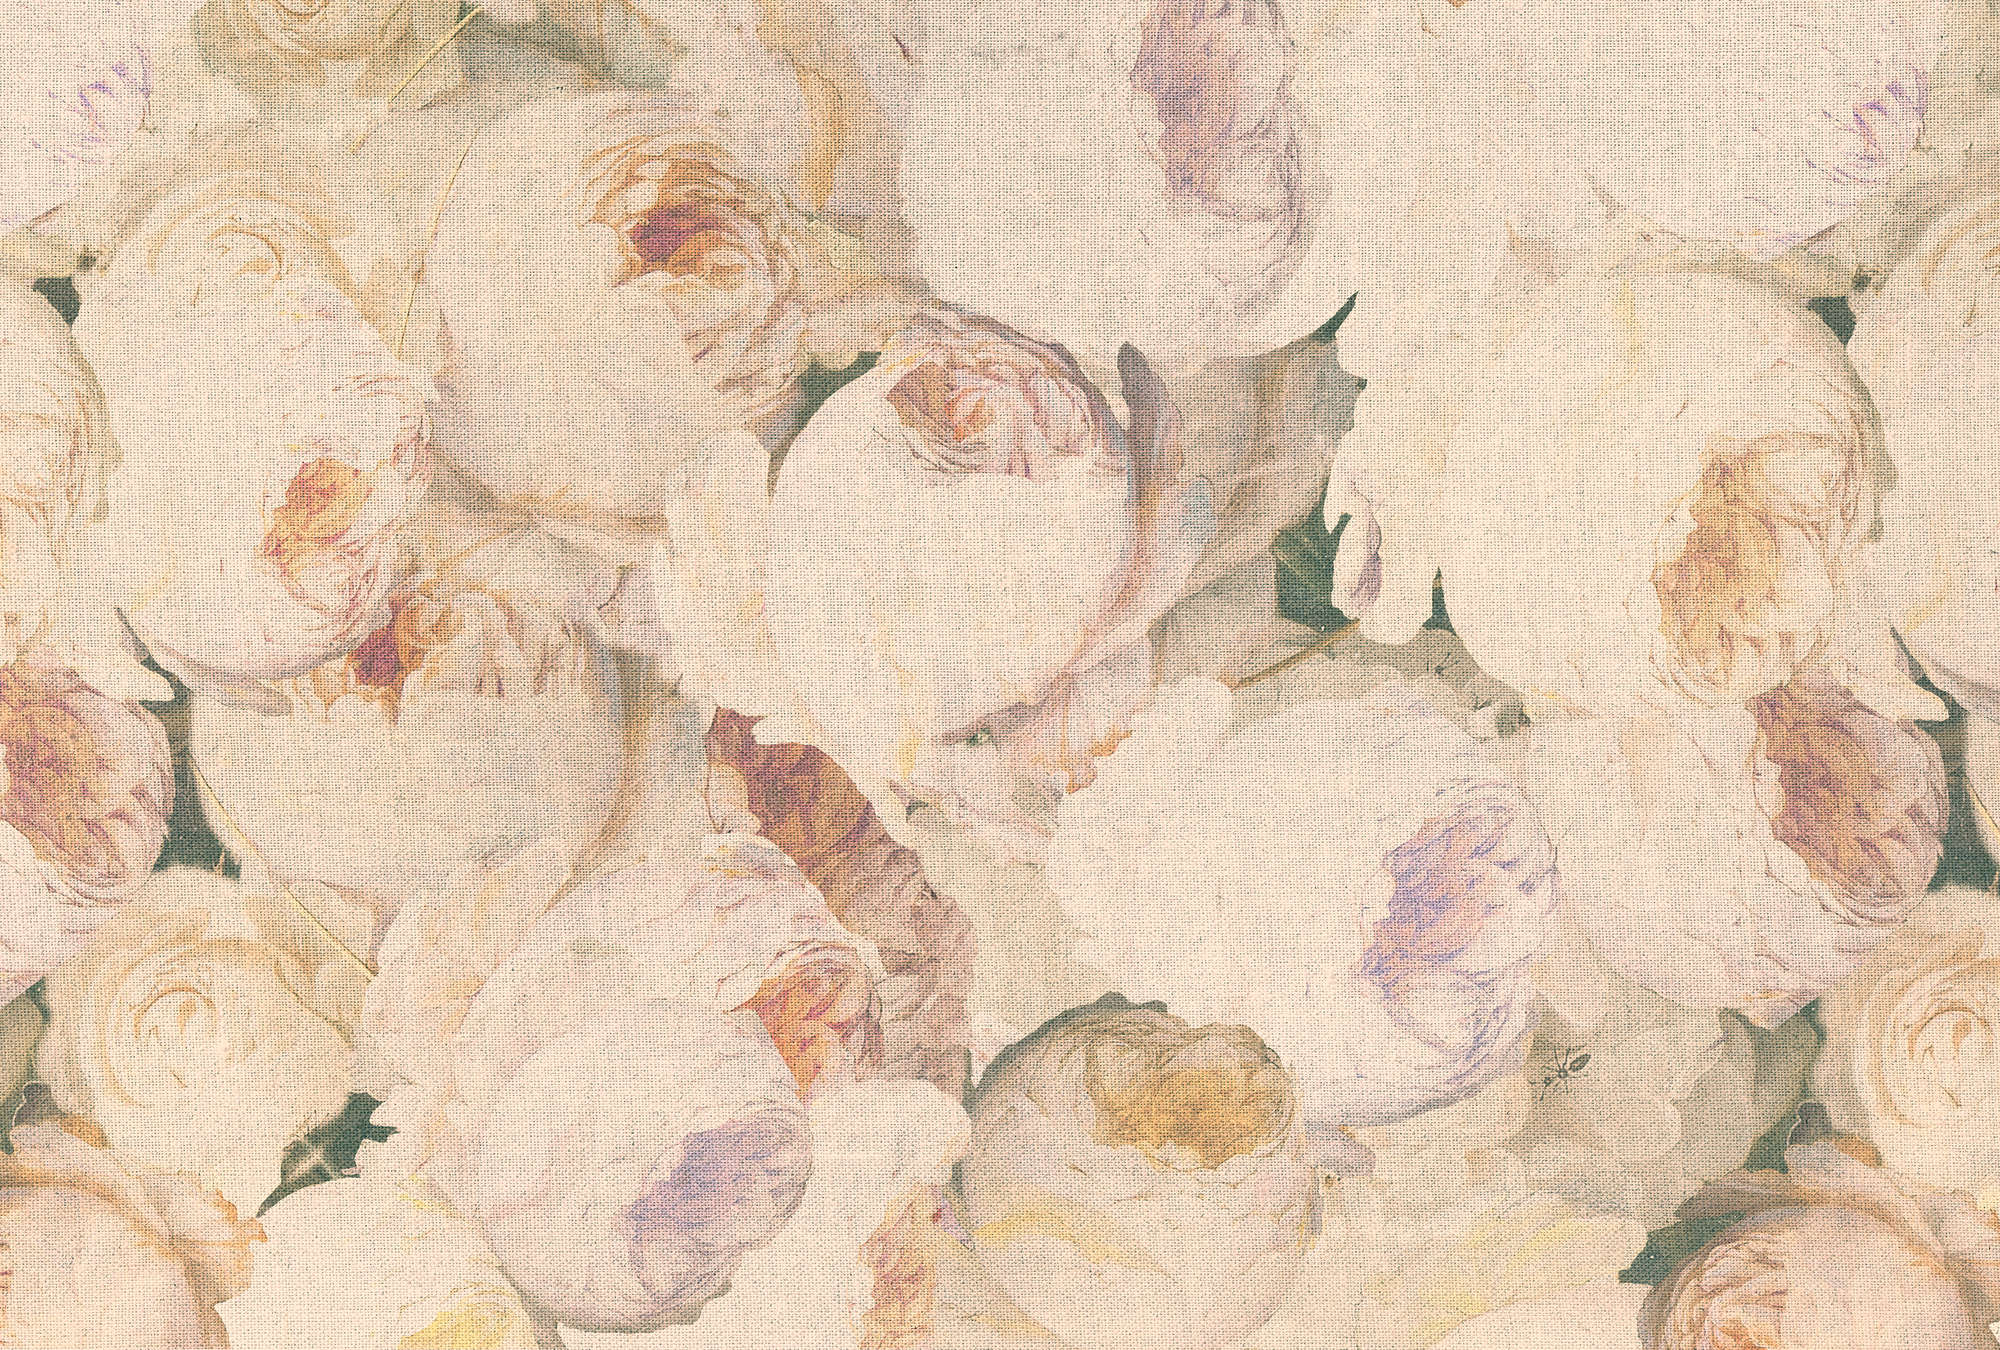             Fototapete Rosen, Blüten & Leinenoptik – Creme, Rosa
        